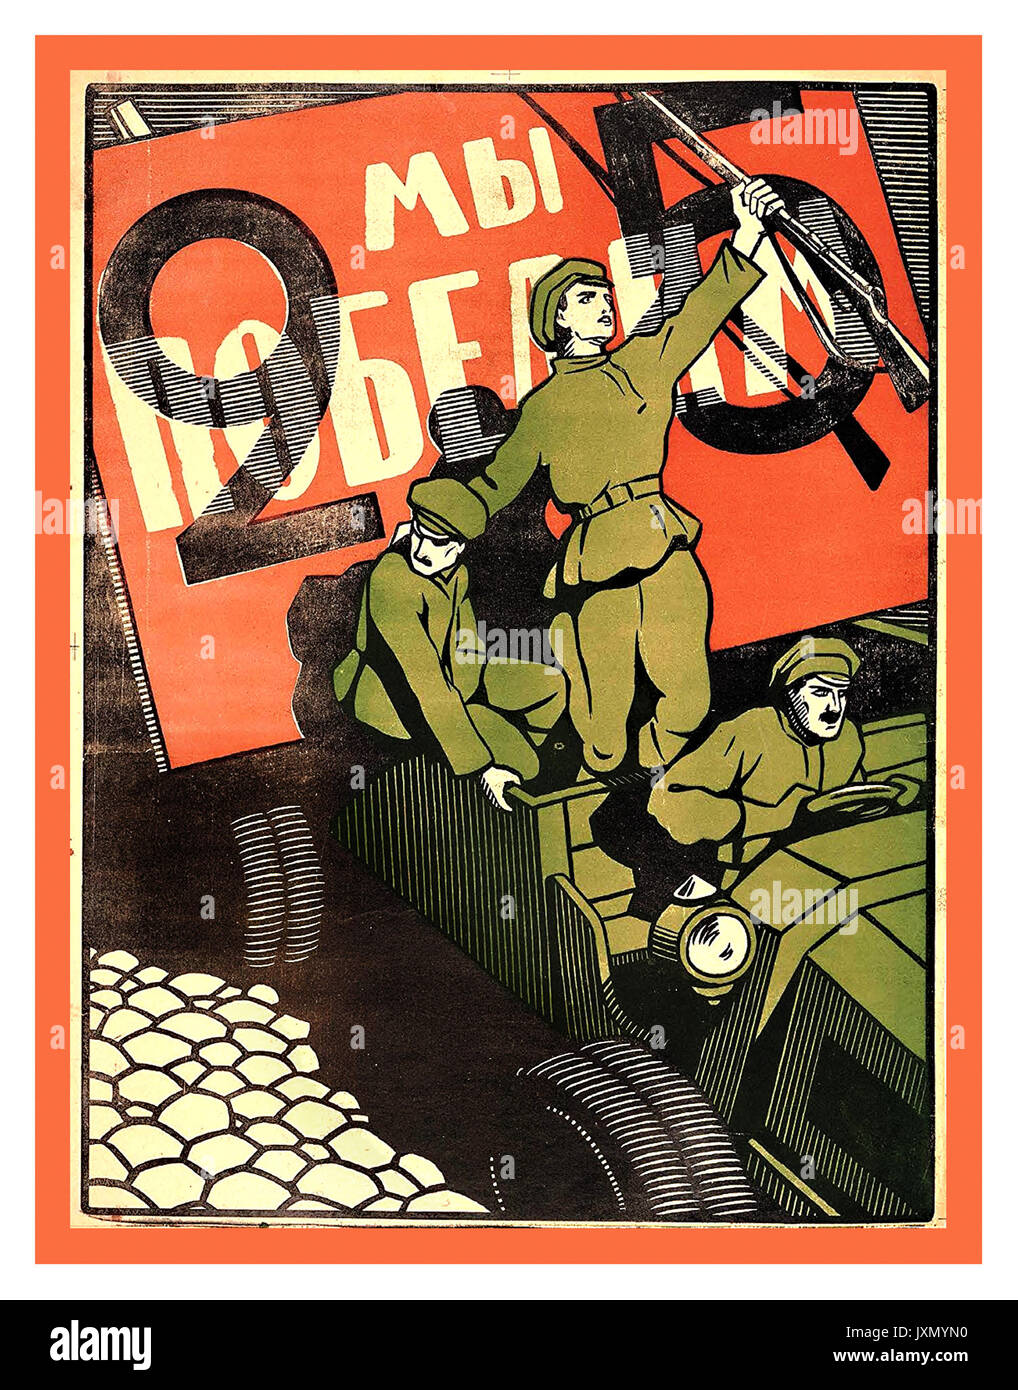 Vintage 1917 Révolution Russe Poster "Nous sommes victorieux" commémorant le premier anniversaire de la révolution bolchevique. Une patrouille de la Garde rouge fonce à travers Petrograd pour protester contre les conditions de vie et de la guerre en 1925 Banque D'Images